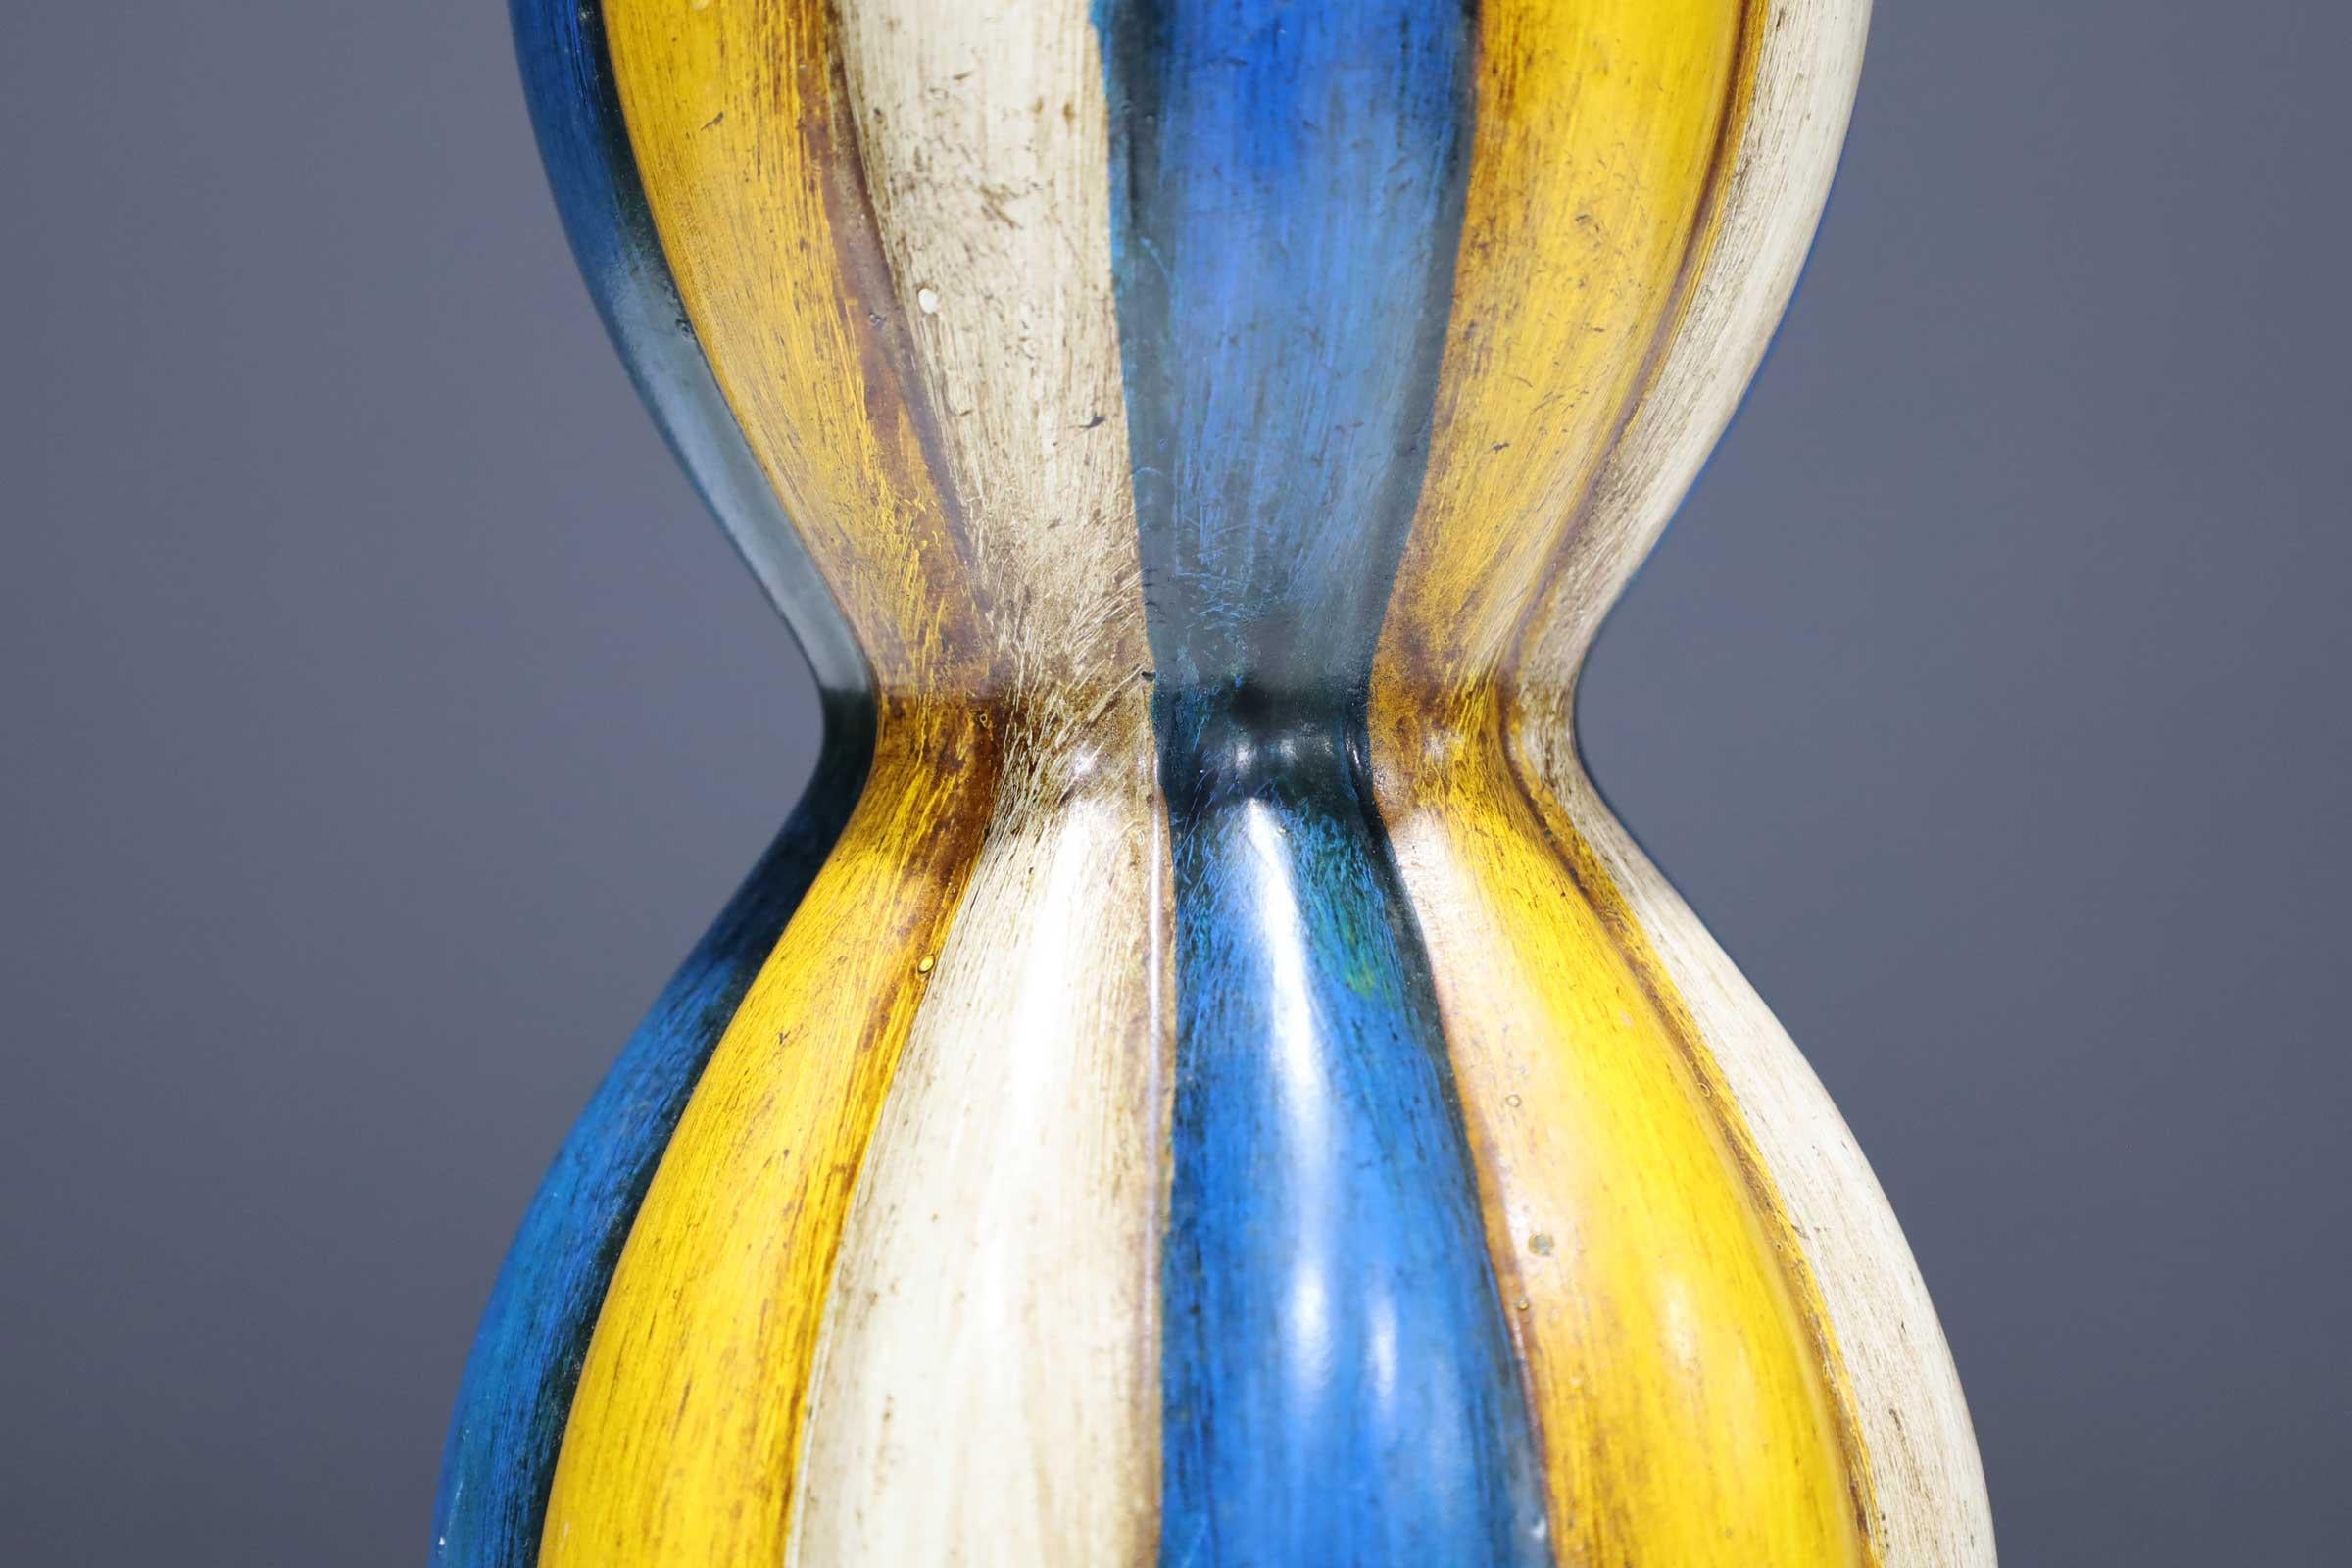 Magnifiques couleurs sur ce vase en céramique.